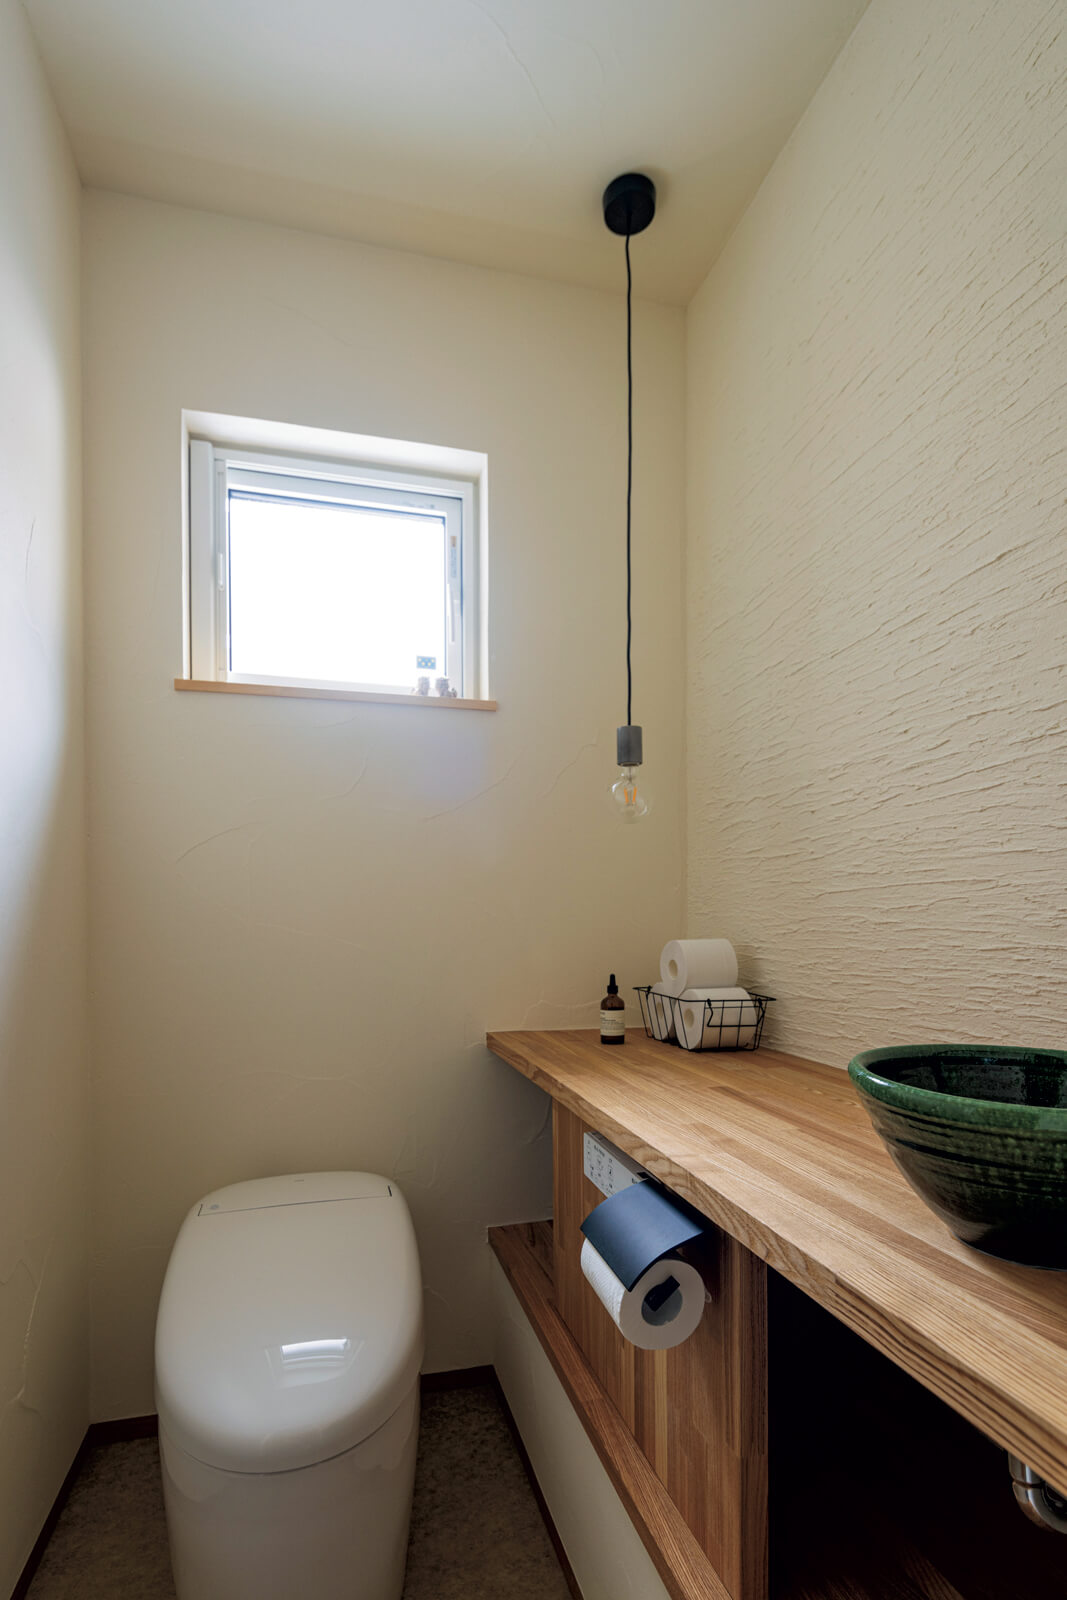 タモ材を用いた造作カウンター、趣ある陶器の手洗いボウルを用いたトイレ
